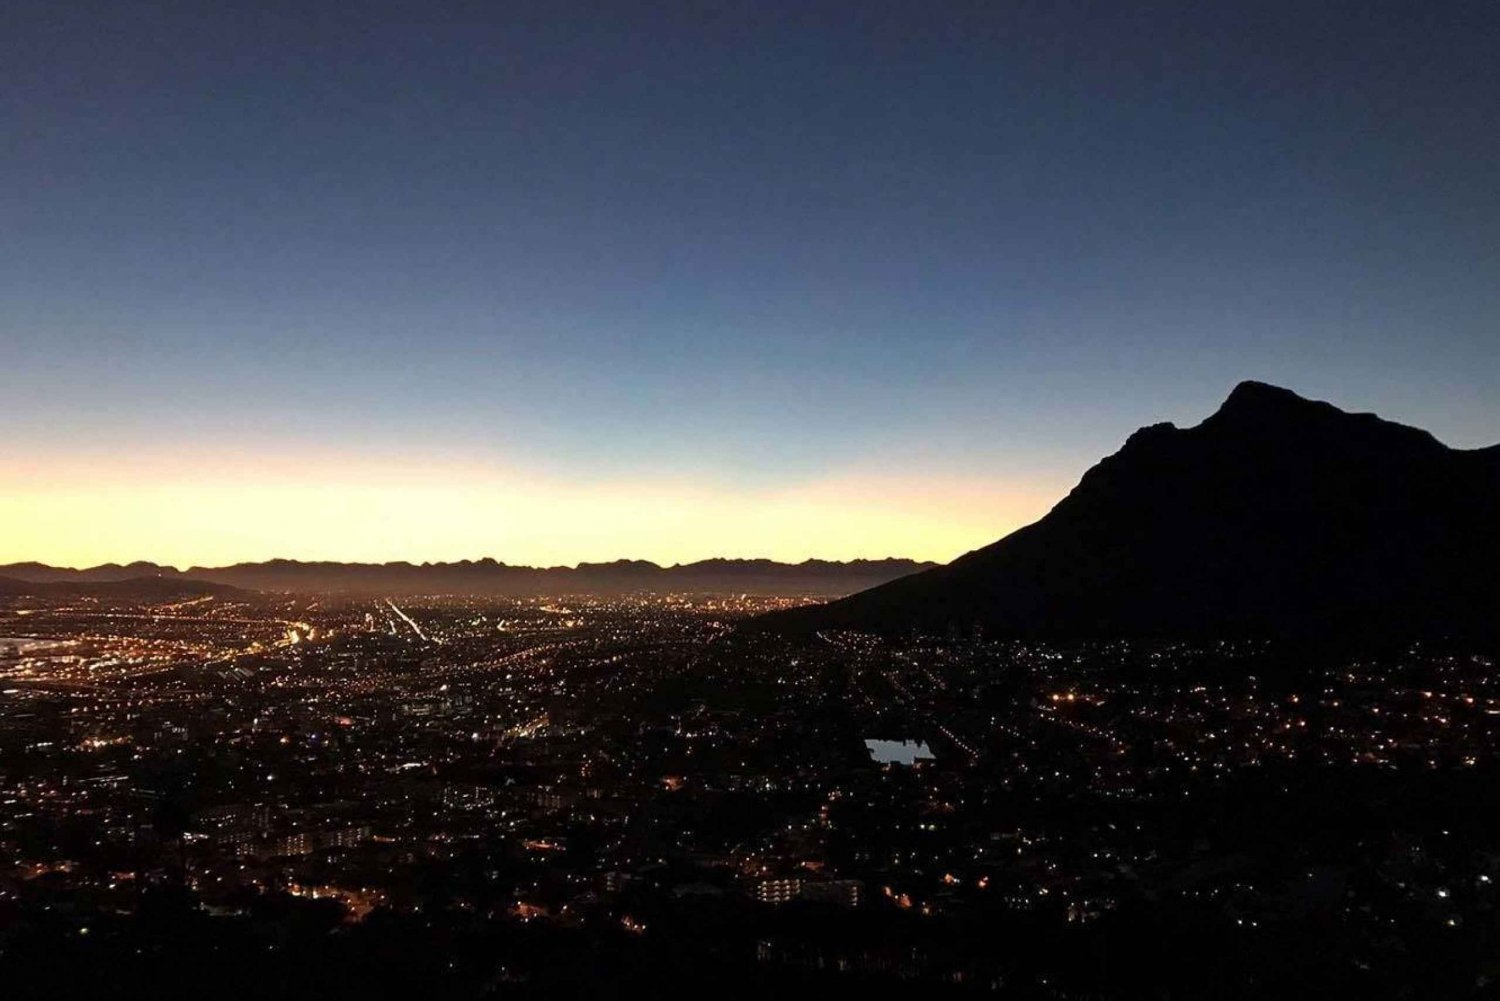 Ciudad del Cabo: caminata al amanecer o al atardecer en Lion's Head